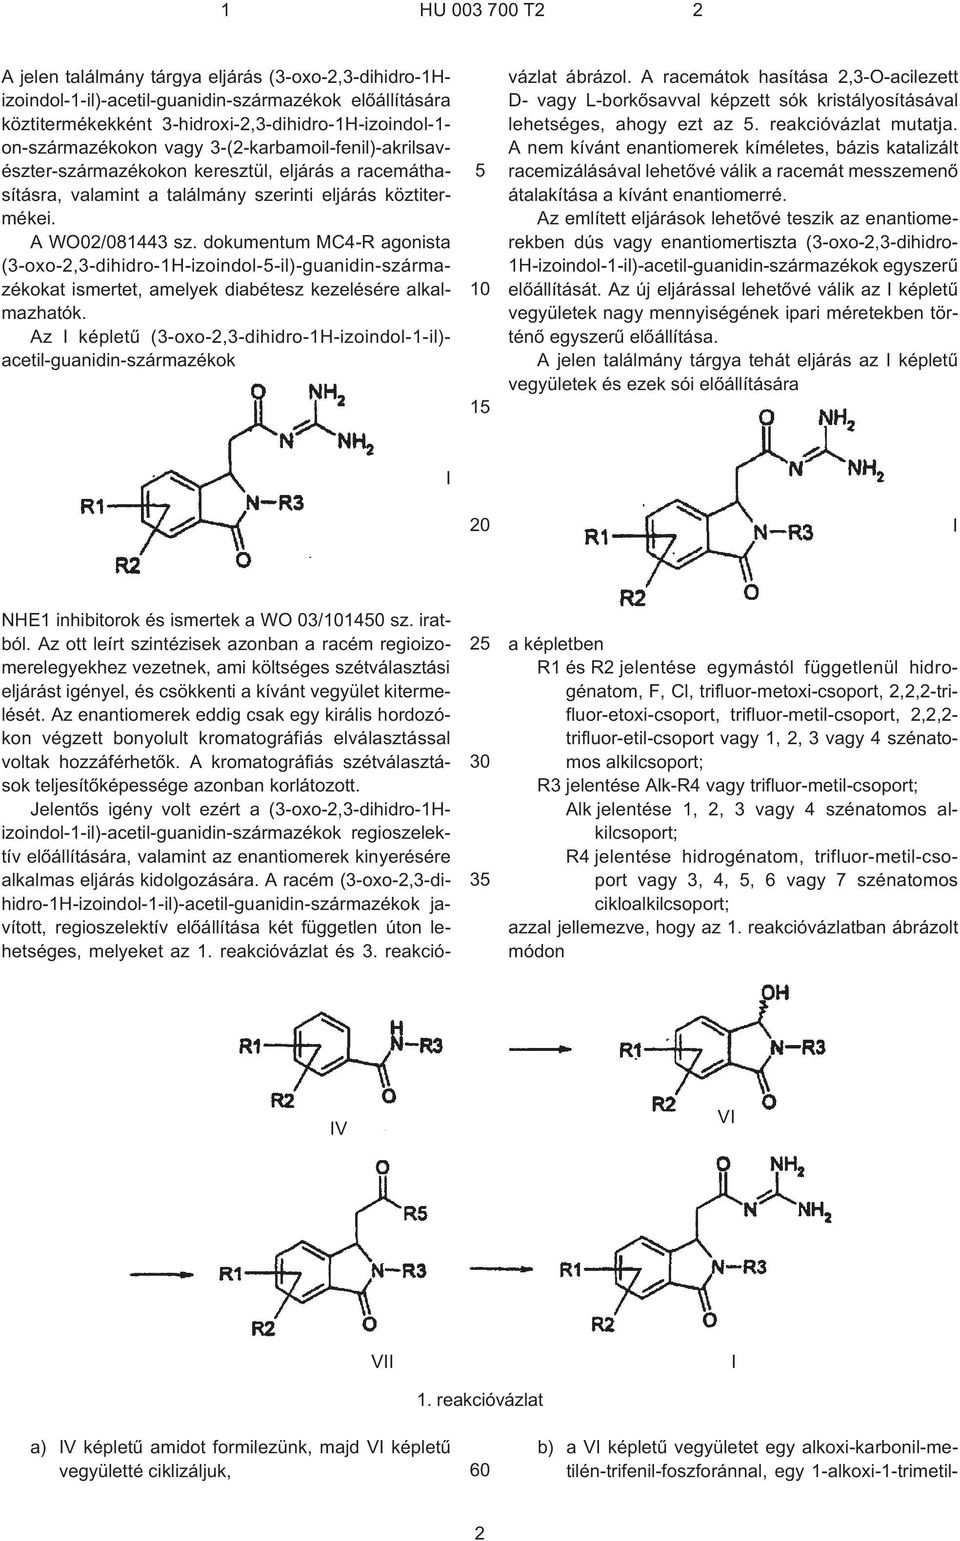 dokumentum MC4¹R agonista (3¹oxo-2,3-dihidro-1H-izoindol-¹il)-guanidin-származékokat ismertet, amelyek diabétesz kezelésére alkalmazhatók.